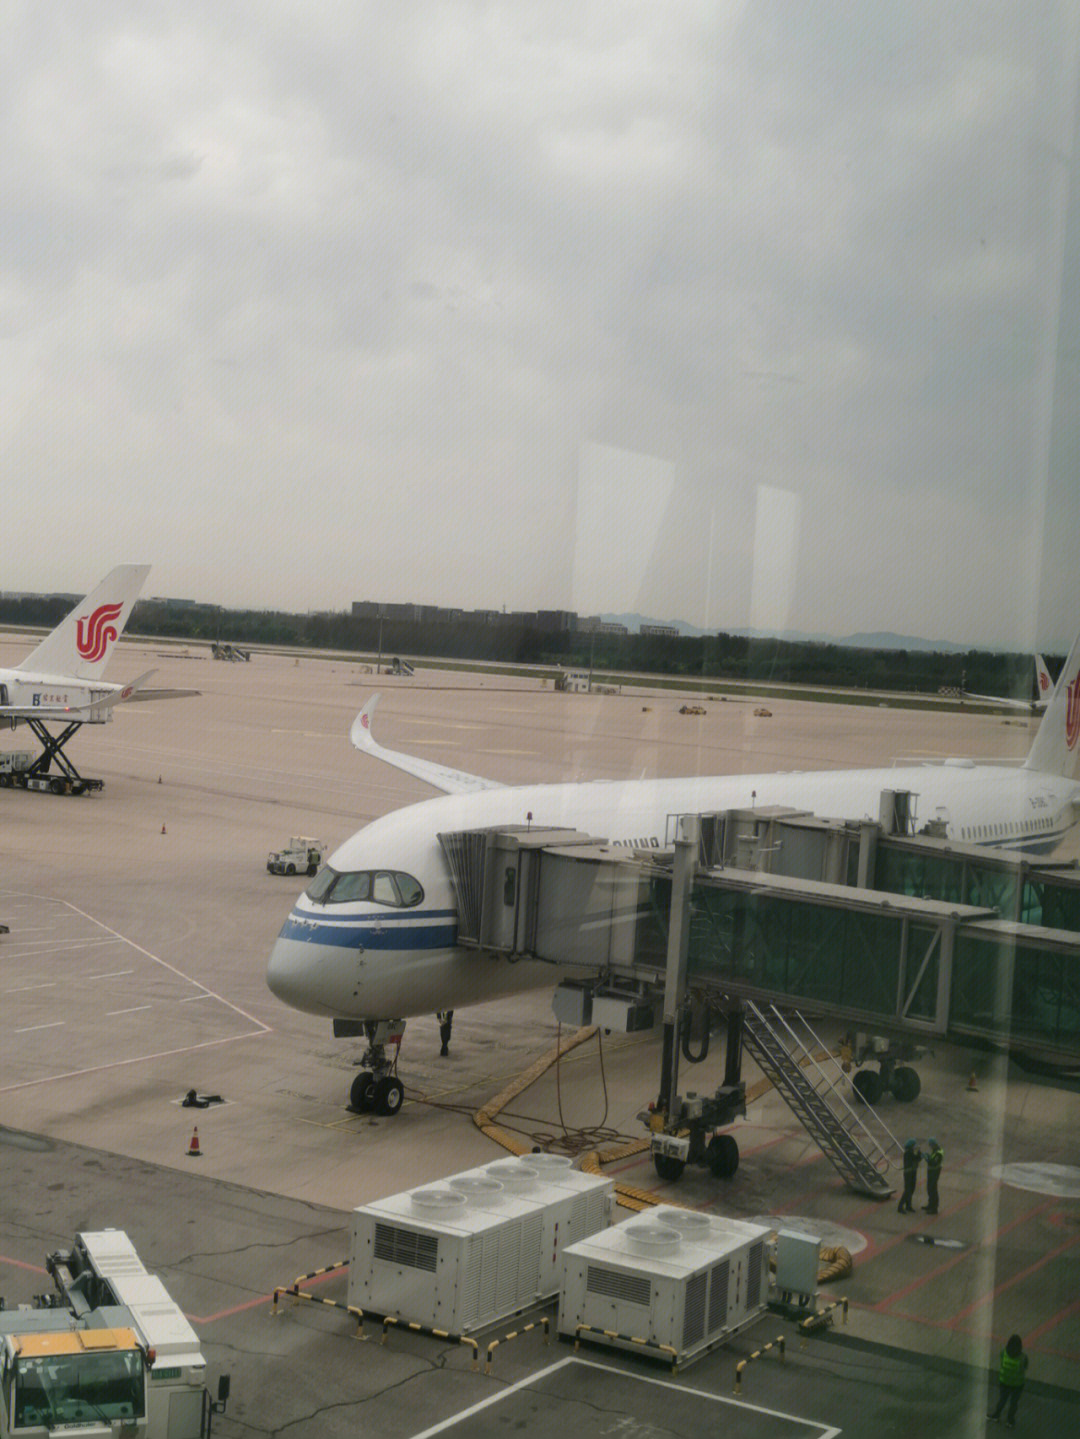 国航a359,ca1365,北京到广州,座位布局是121,第一次坐a359,飞机的噪音